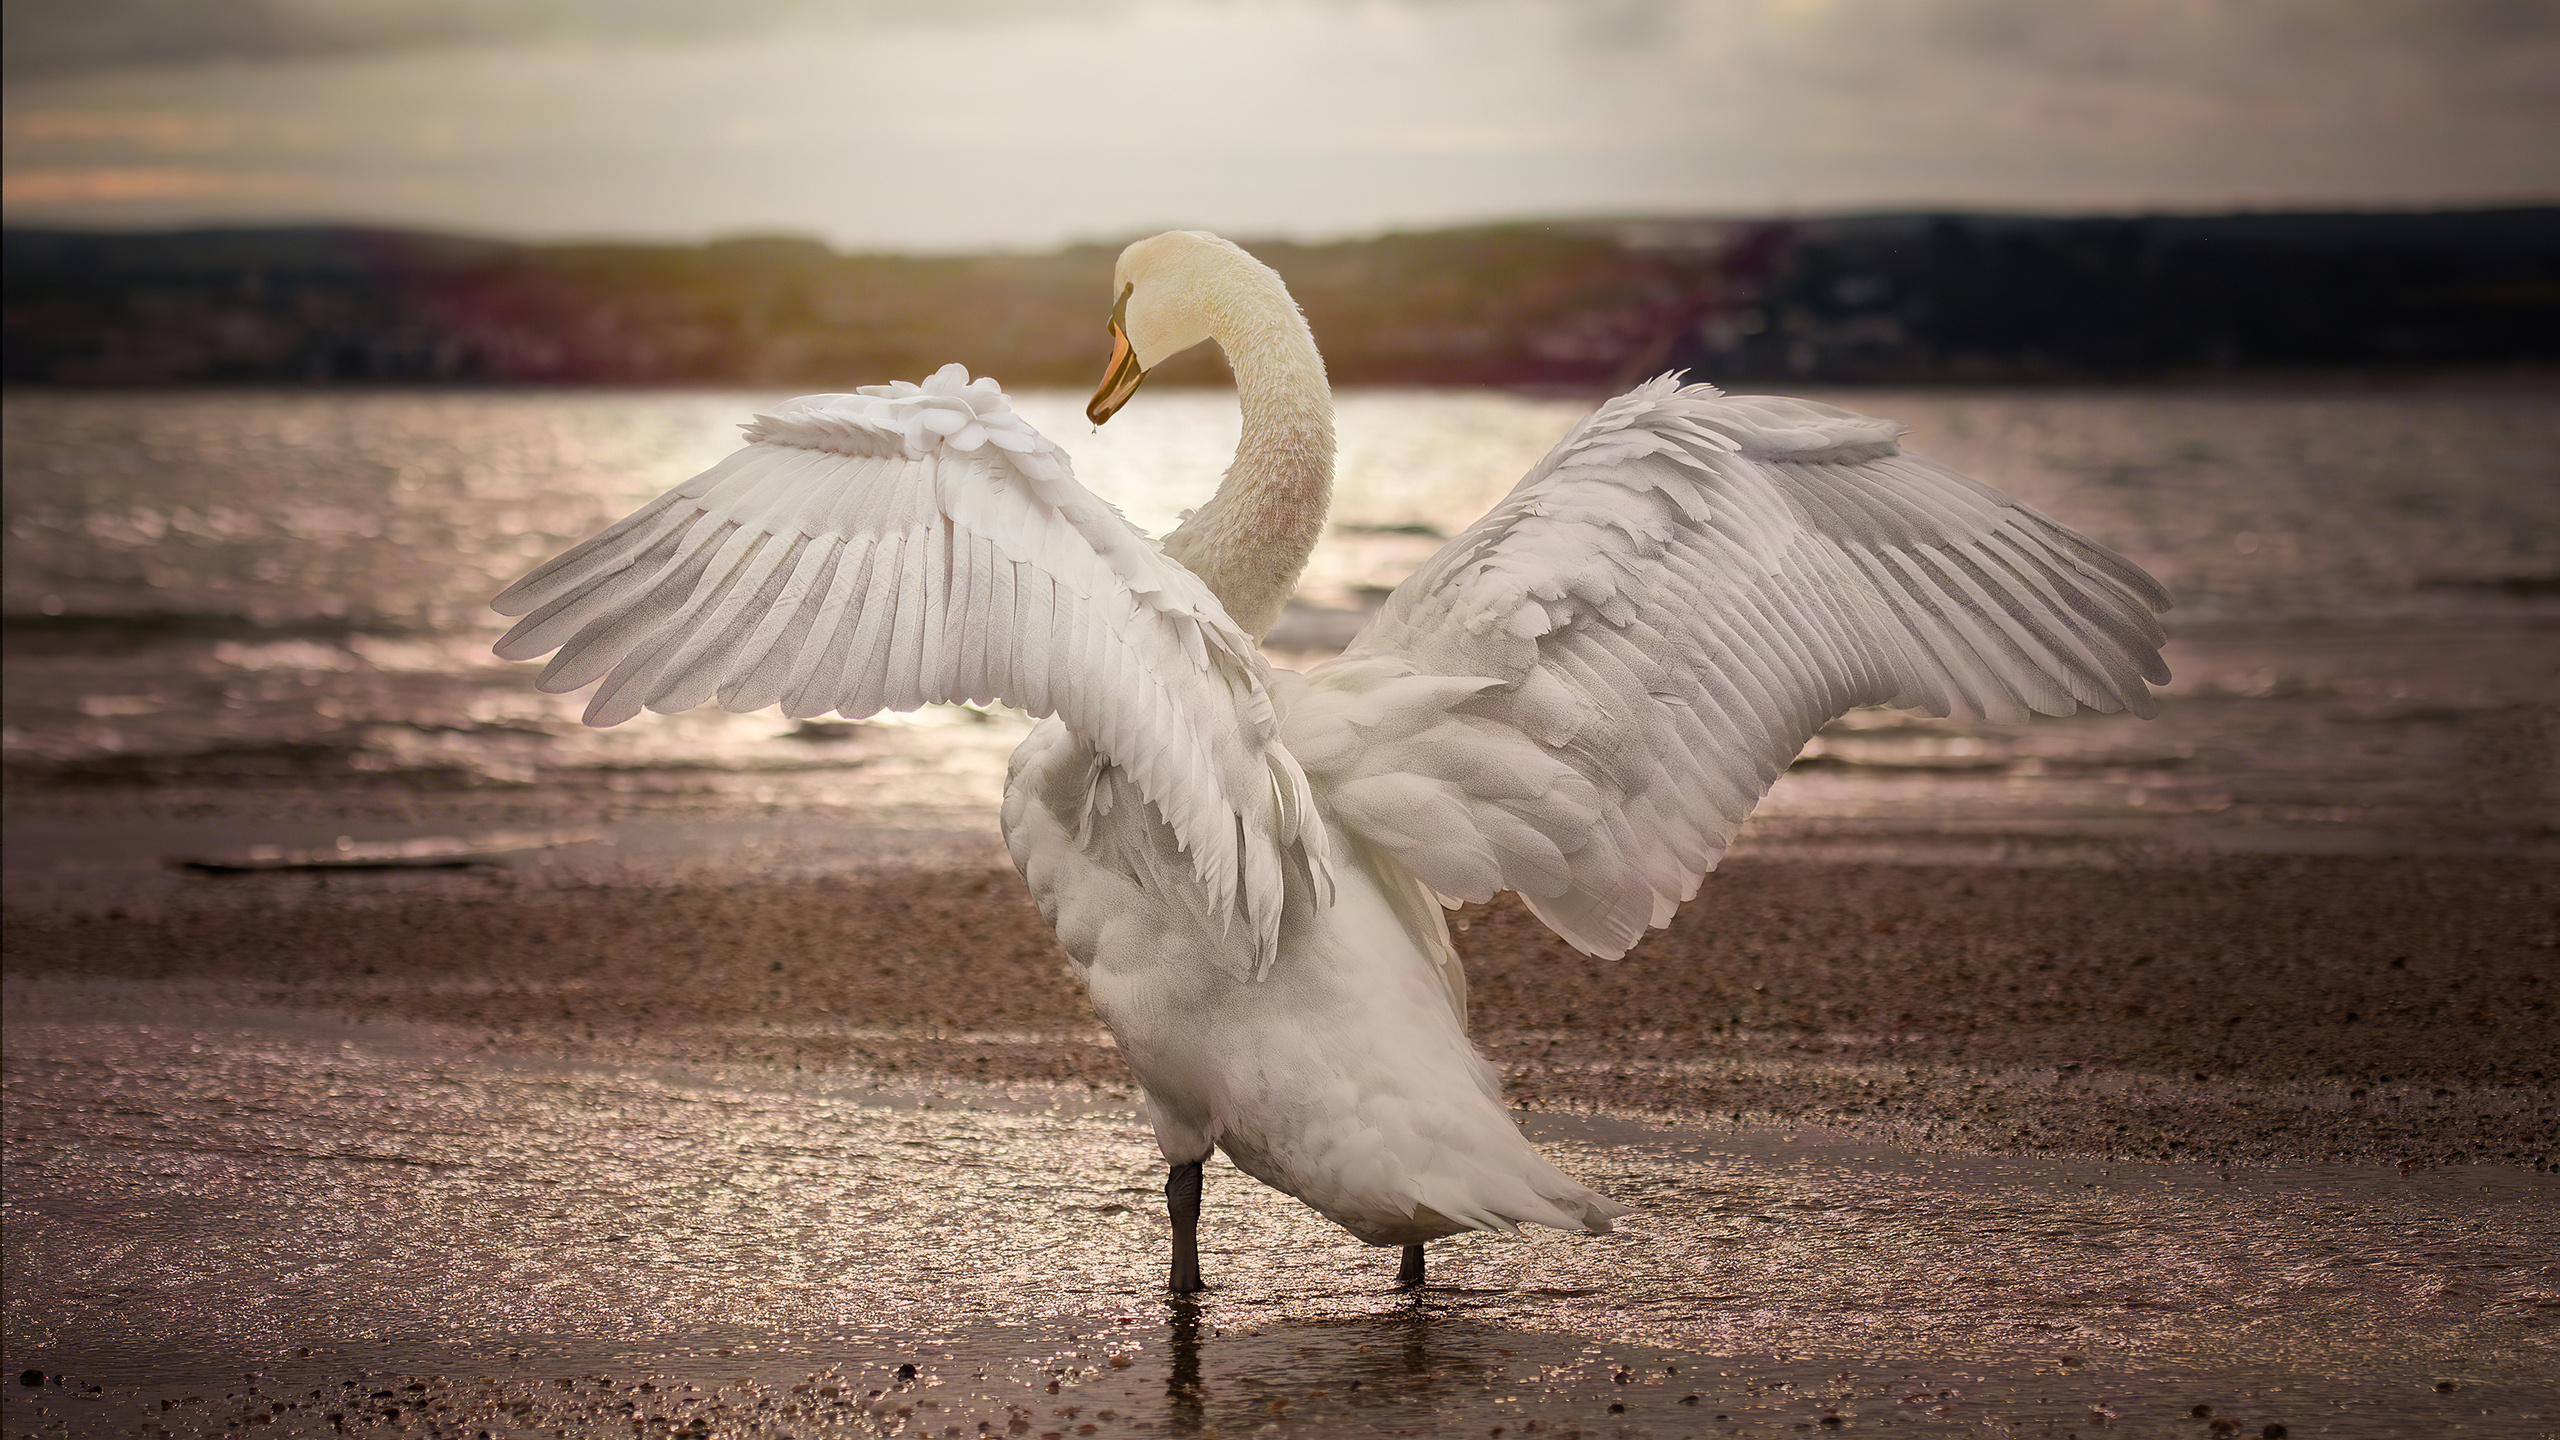 Swan opening wings, 1440p resolution HD, HD 4K wallpapers, Opening wings 4K, 2560x1440 HD Desktop